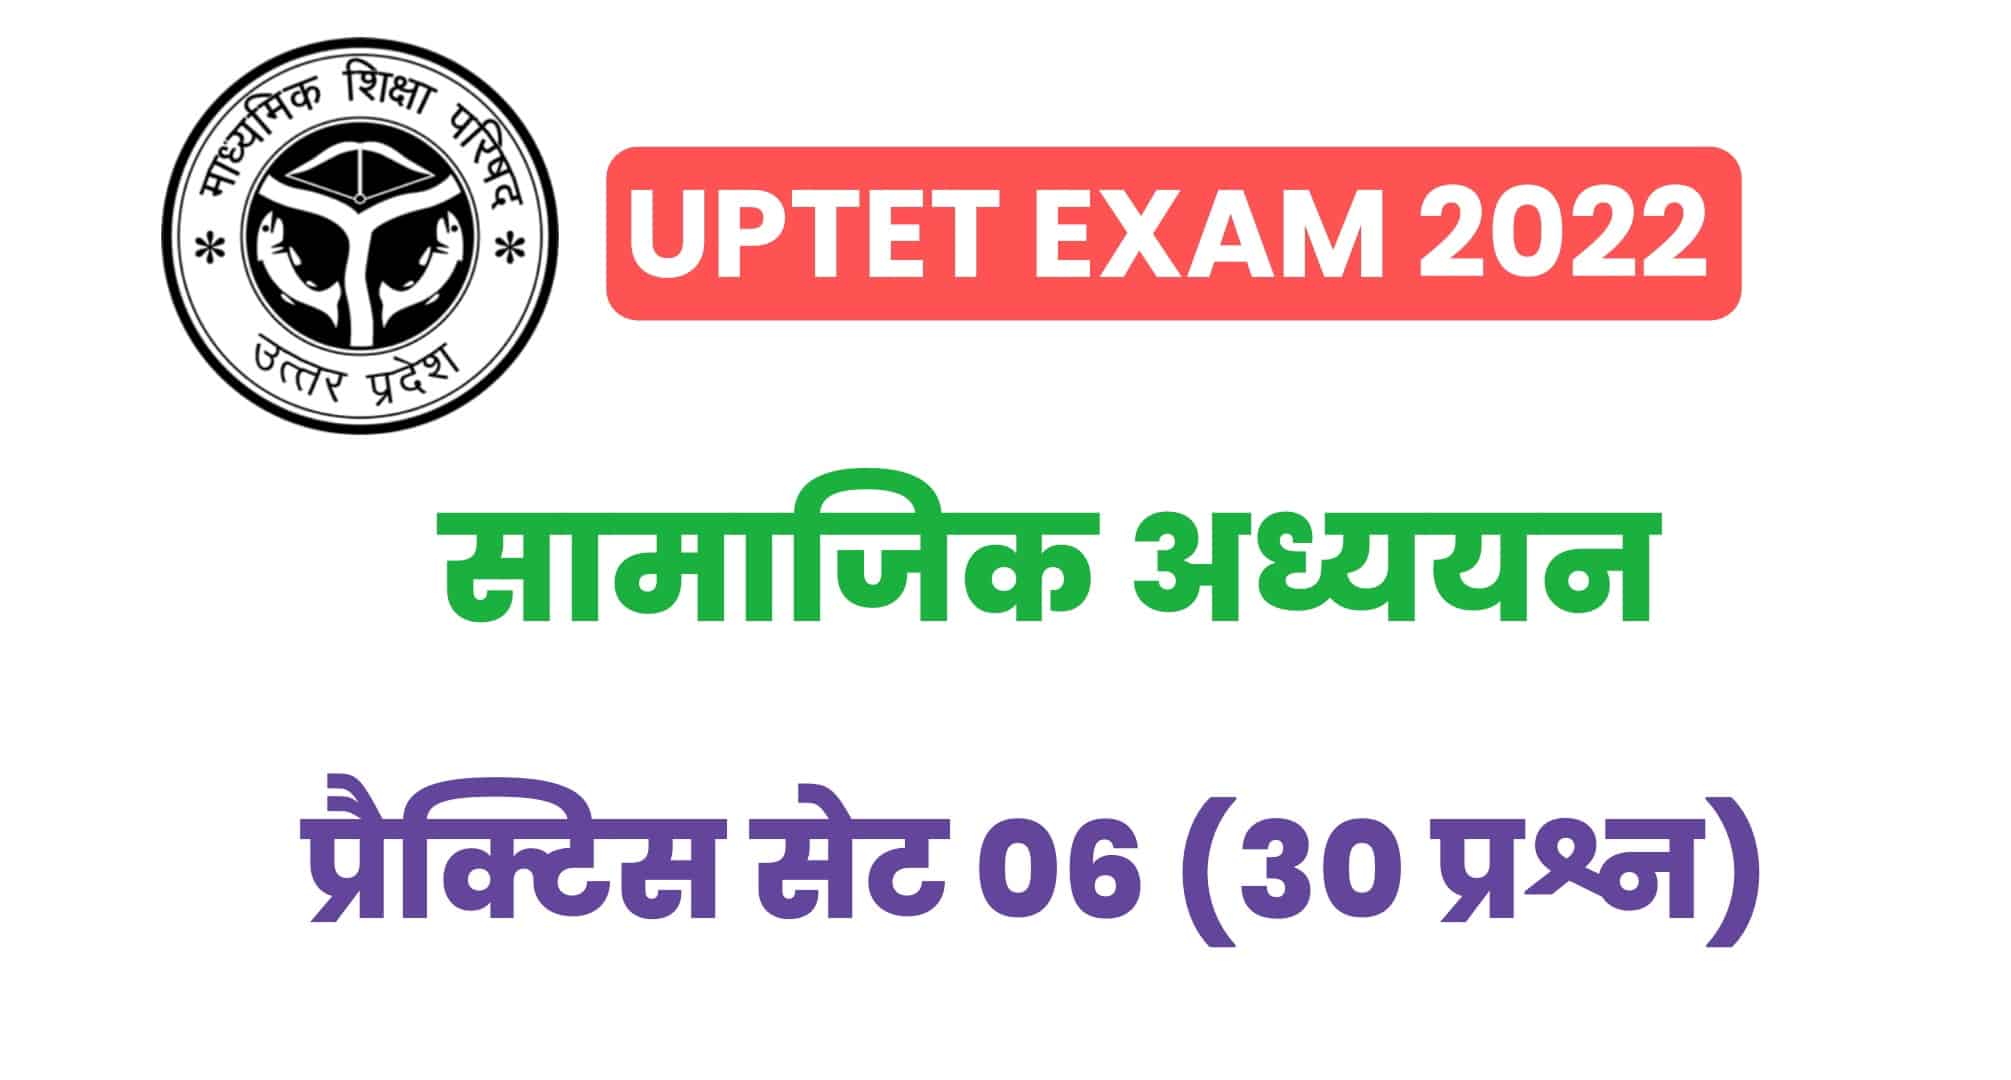 UPTET Exam 2022 : परीक्षा में पूछे गये सामाजिक अध्ययन के मुख्य प्रश्न, देखें